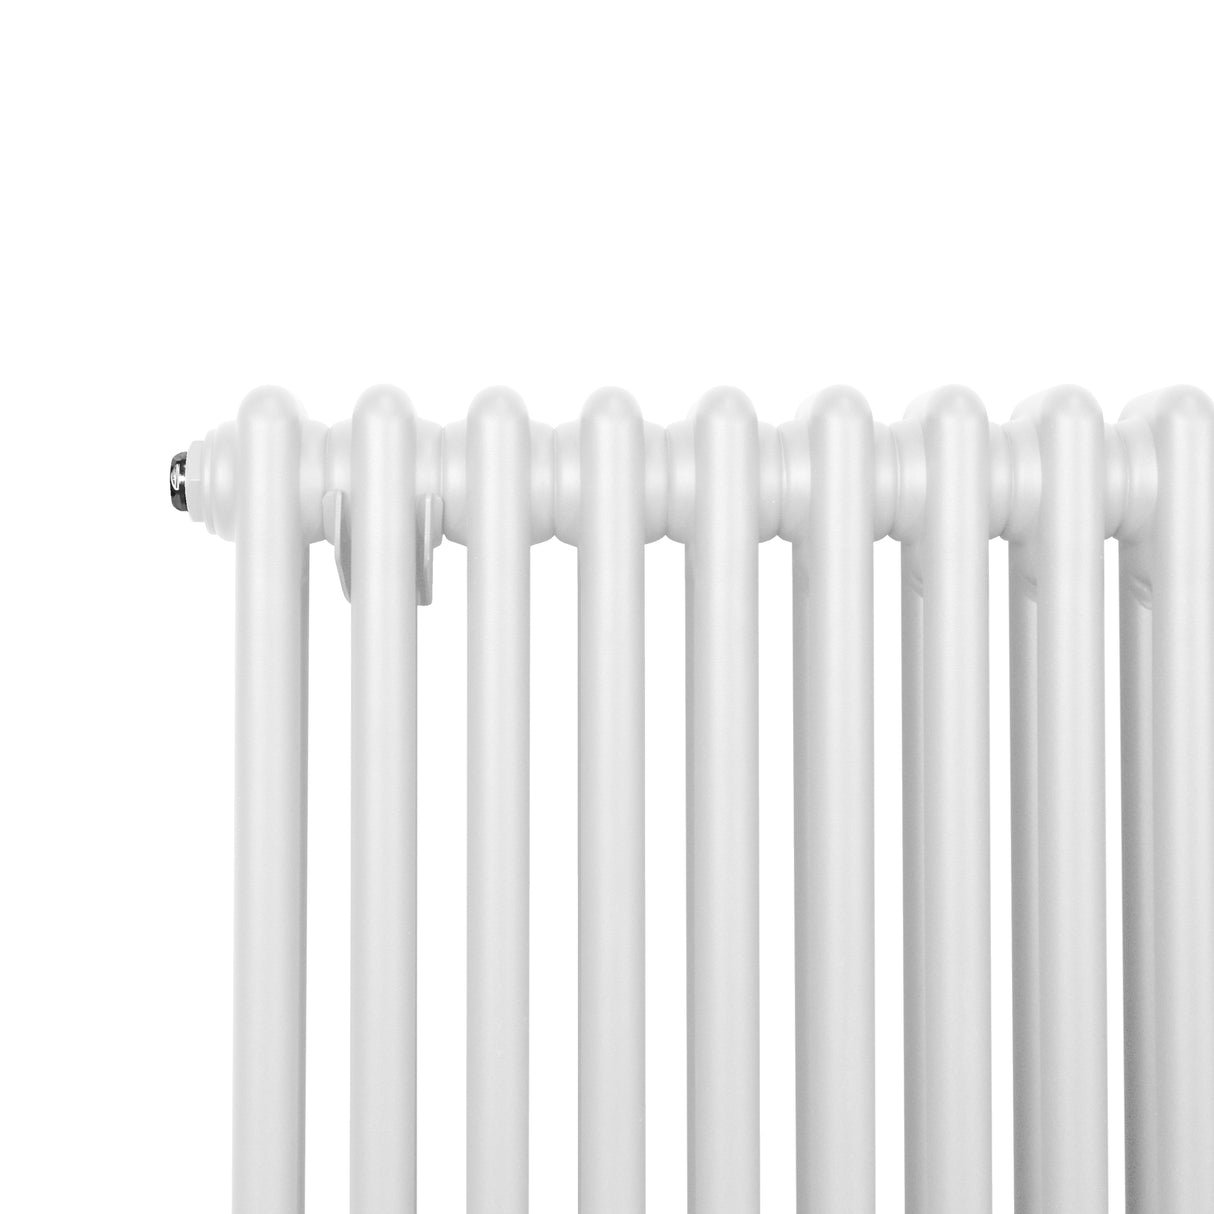 Radiador Tradicional Vertical de 2 columnas - 1500x 292mm - Blanco